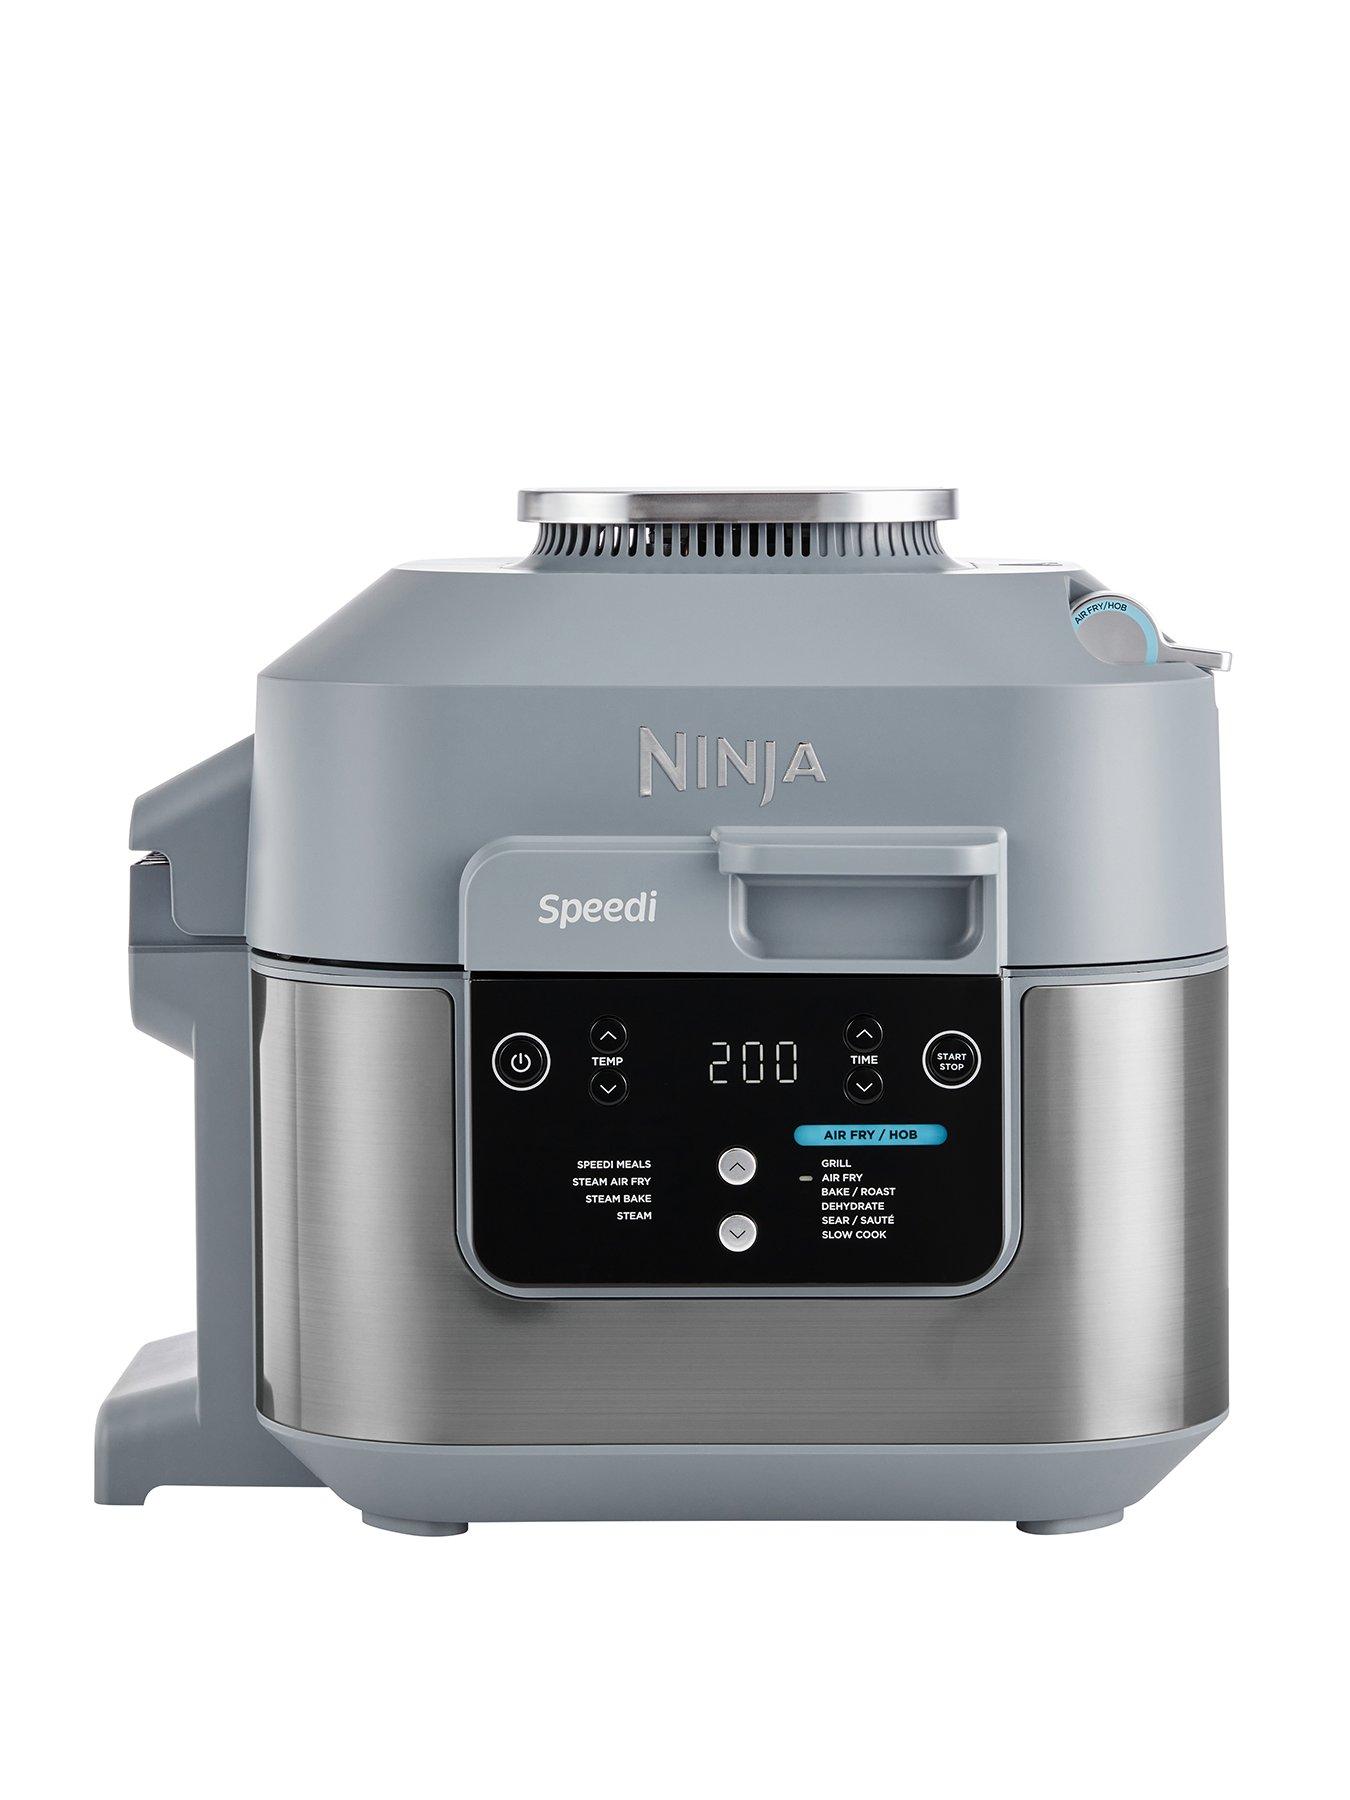 Bếp nấu ăn tiện lợi hơn bao giờ hết với NINJA Ninja Speedi 10-in-1 Rapid Cooker và Air Fryer ON400UK nhỏ nhất. Không còn lo lắng về không gian nhà bếp, bạn có thể nấu nhiều món ăn khác nhau chỉ trong một chiếc nồi duy nhất. Nhỏ gọn và hiệu suất cao, nó là lựa chọn lý tưởng cho mọi gia đình.